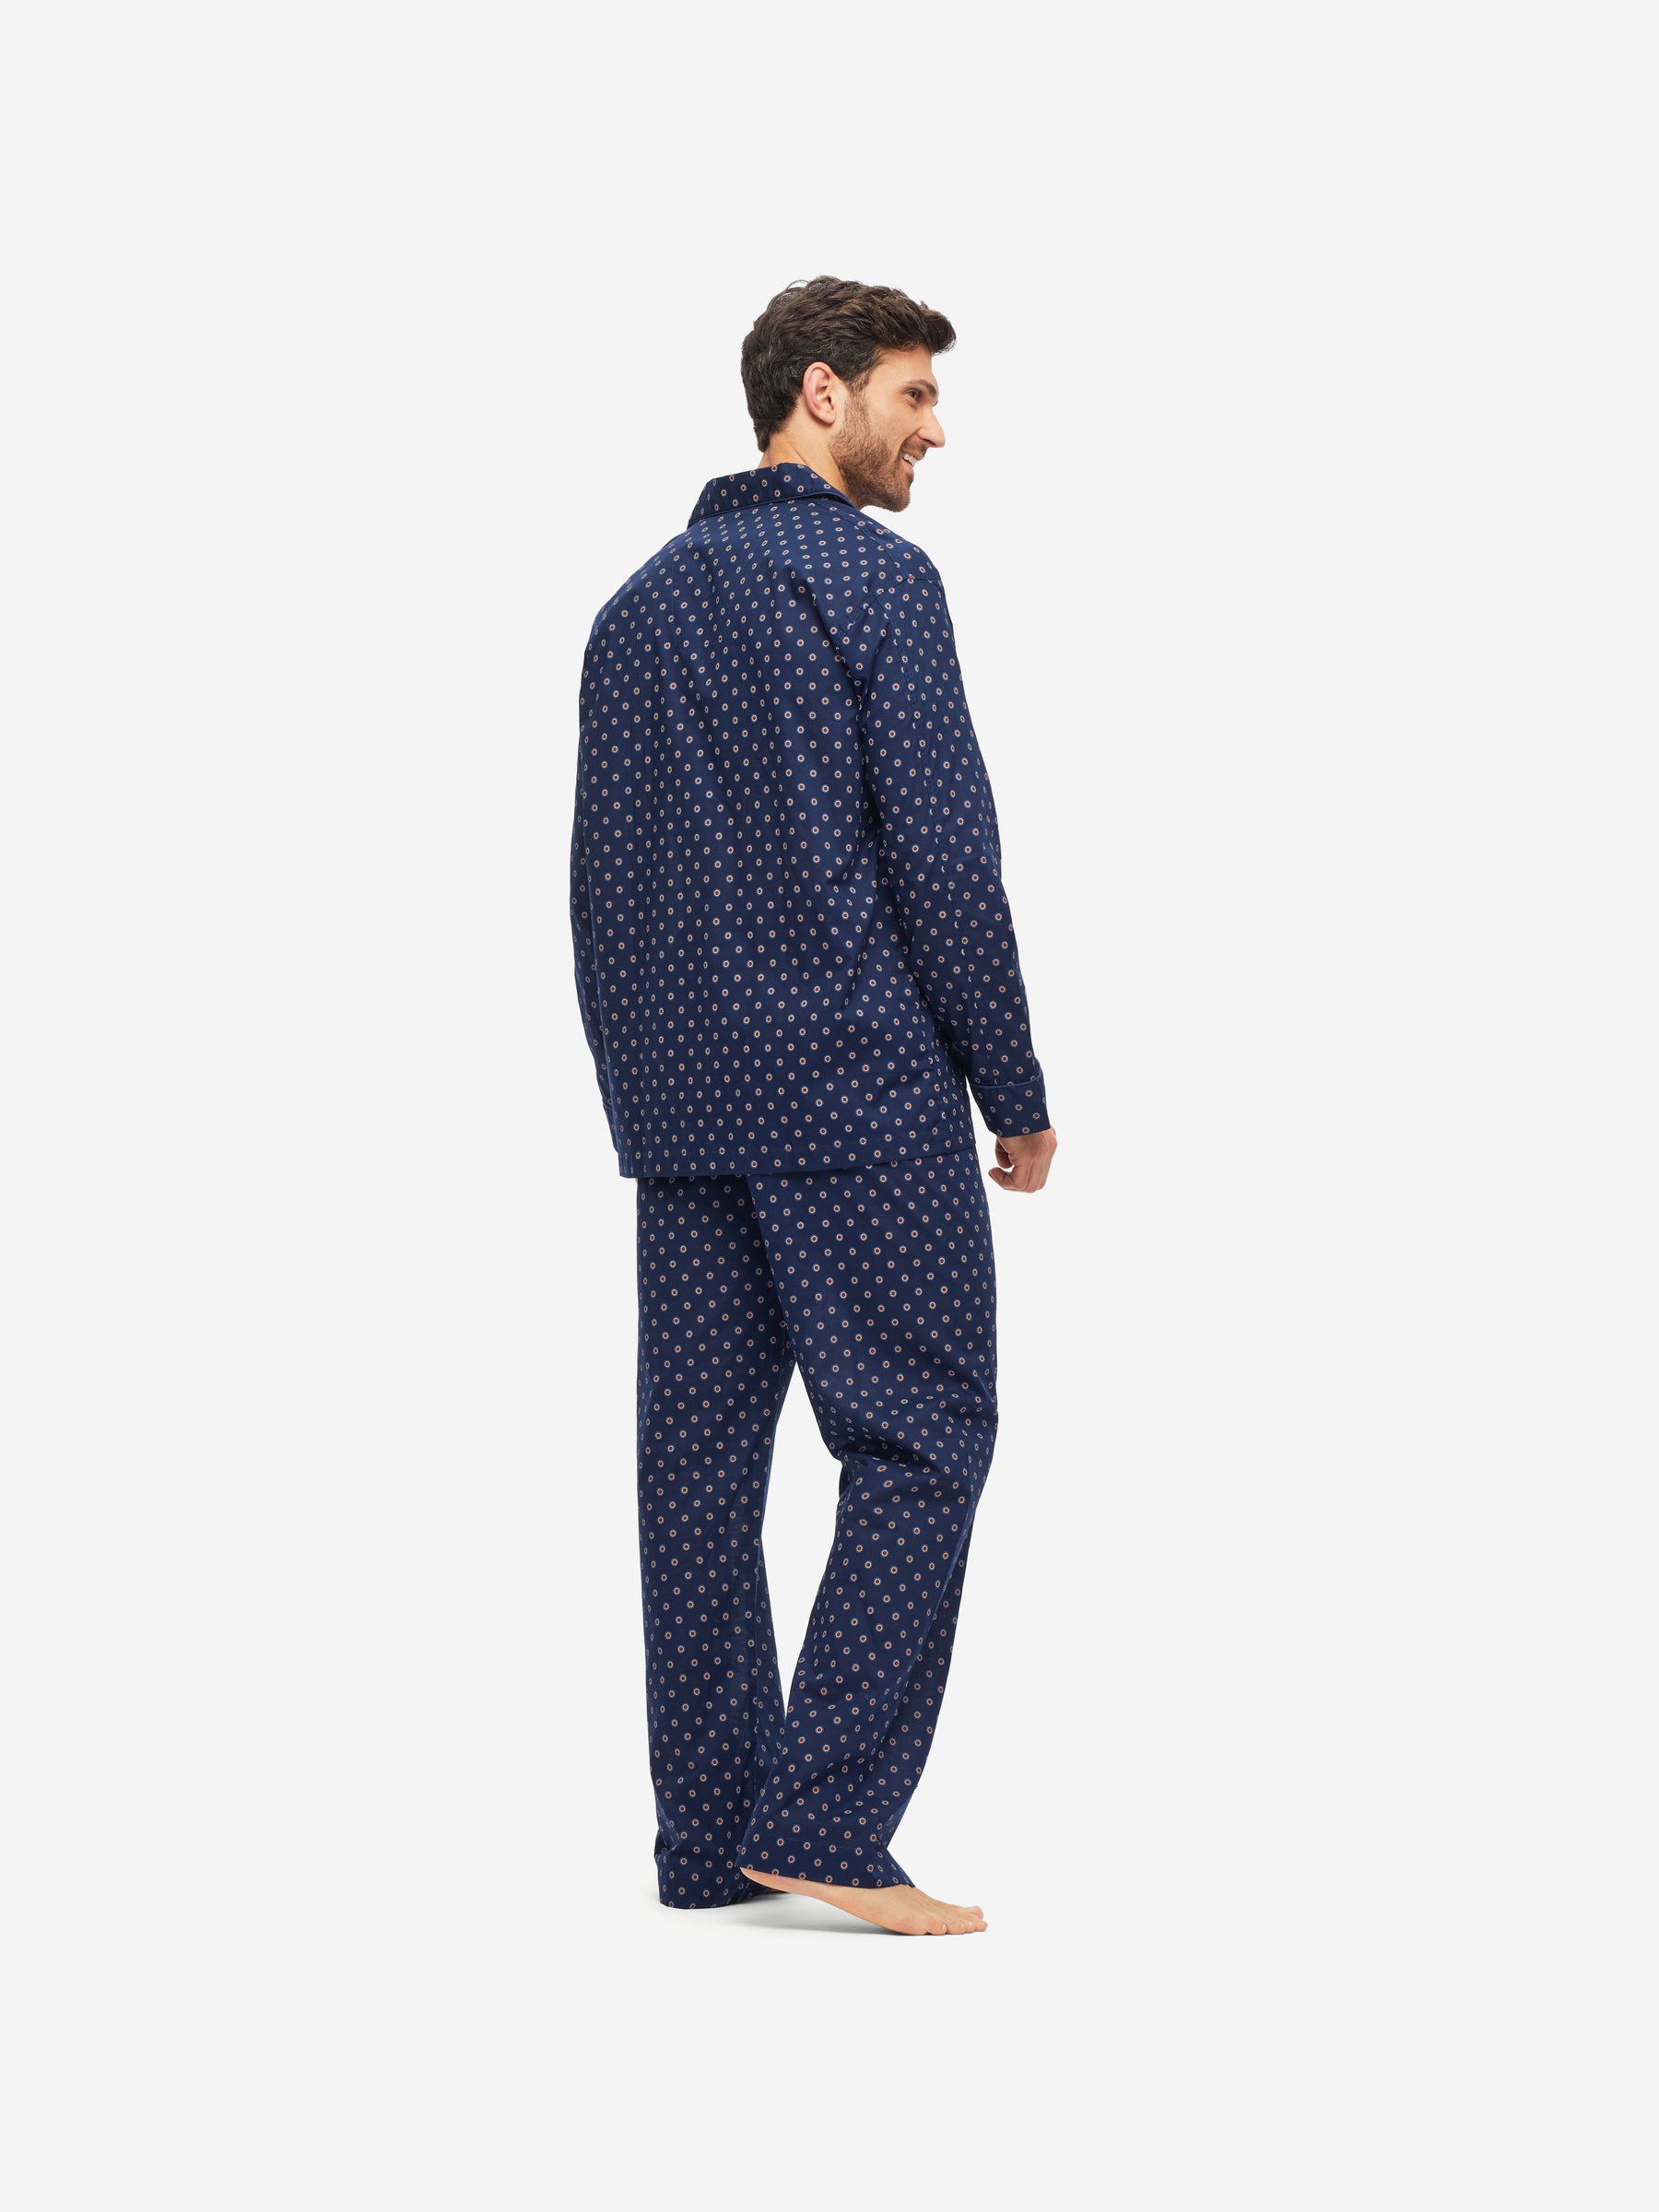 Men's Classic Fit Pyjamas Nelson 90 Cotton Batiste Navy